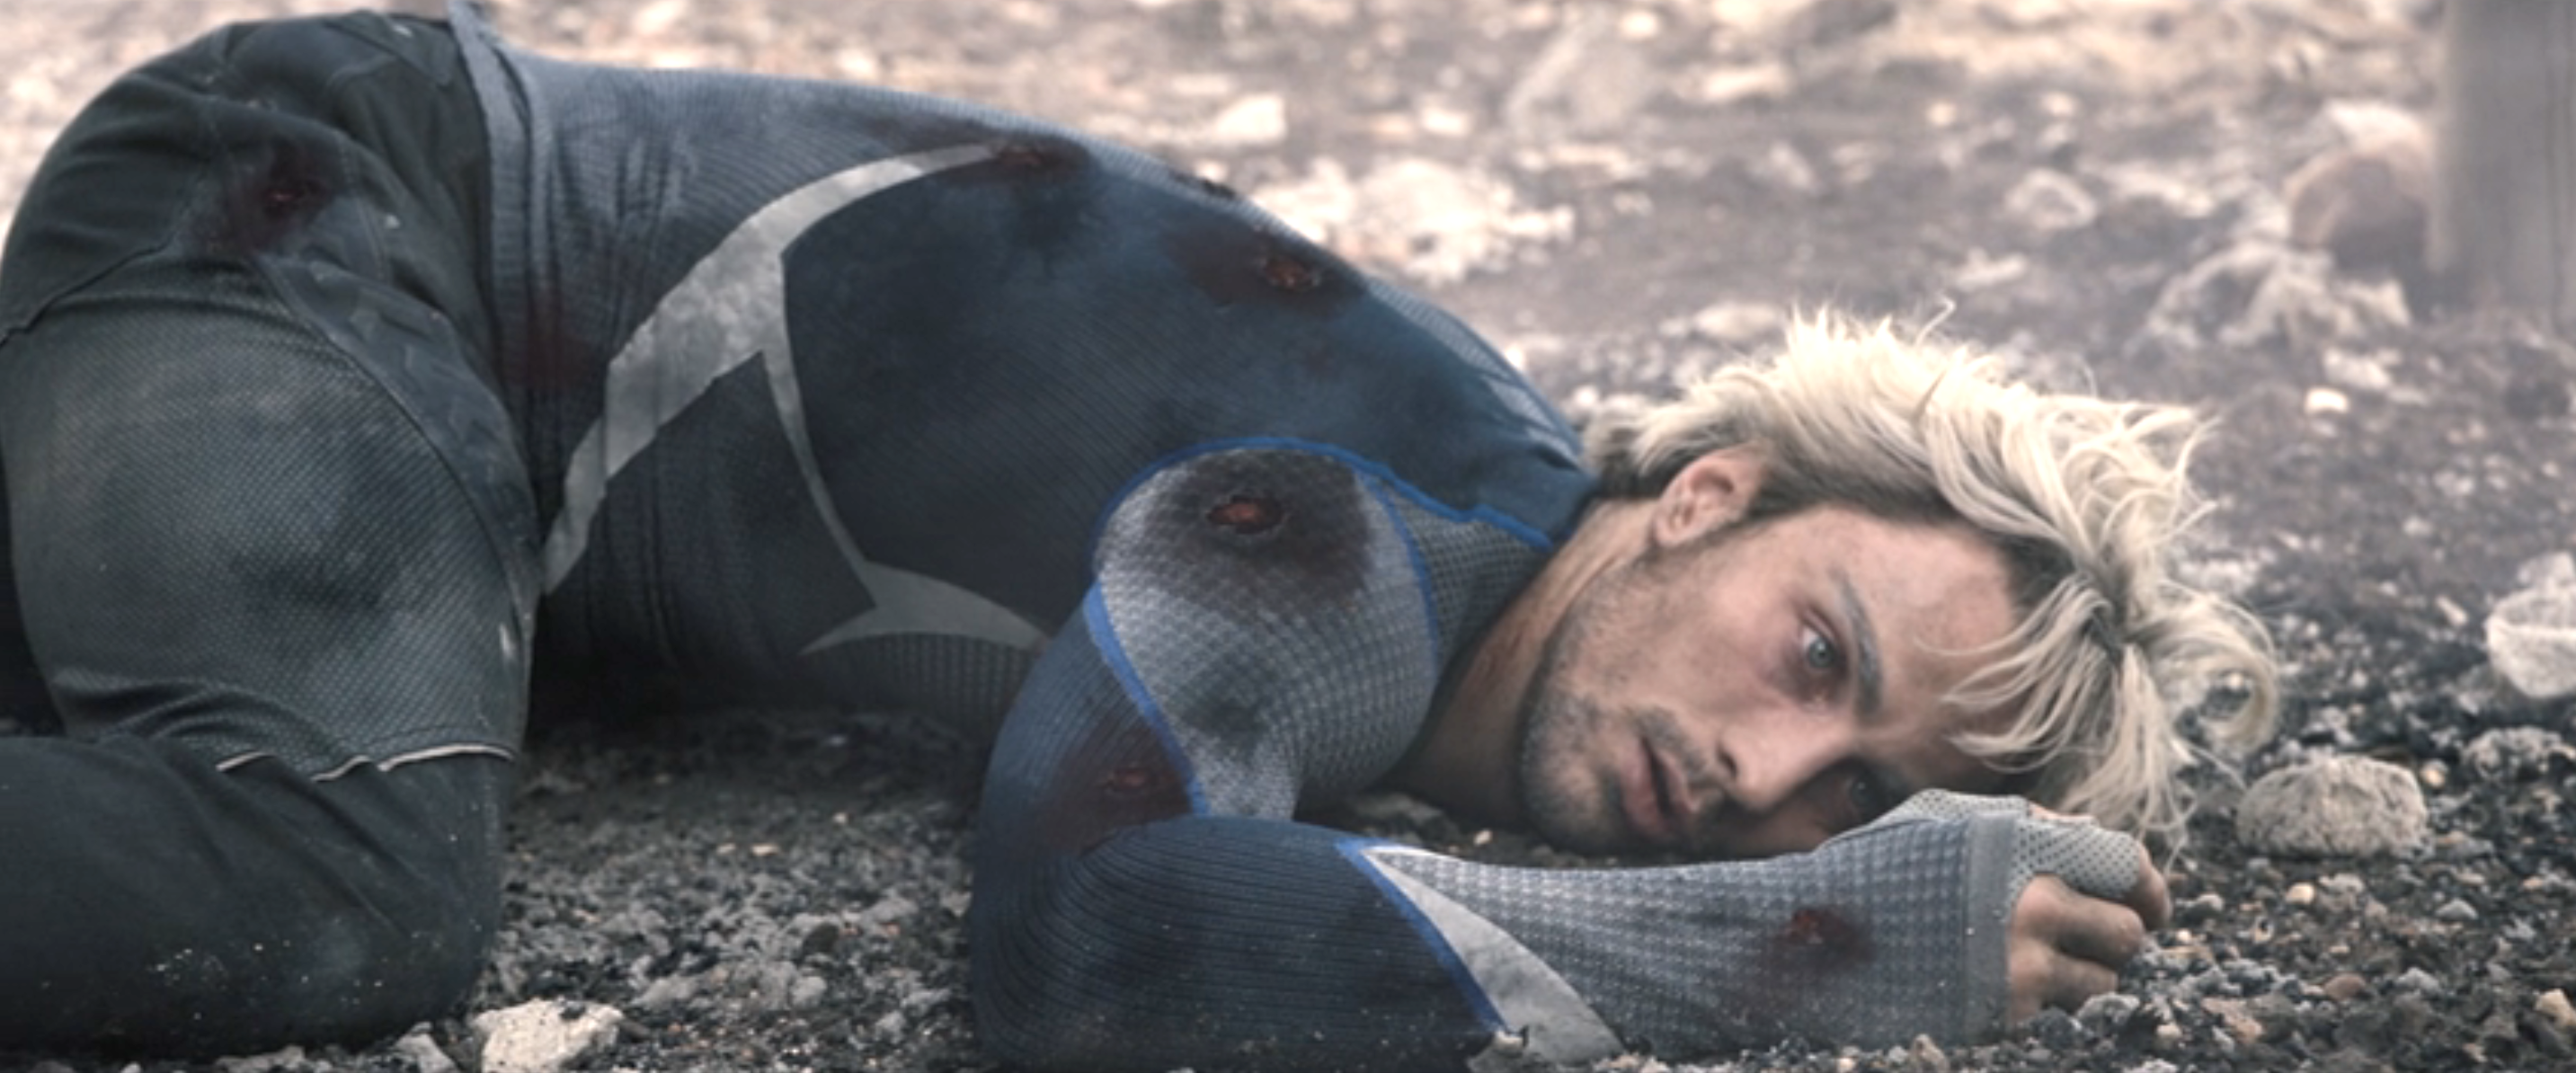 Pietro lying dead